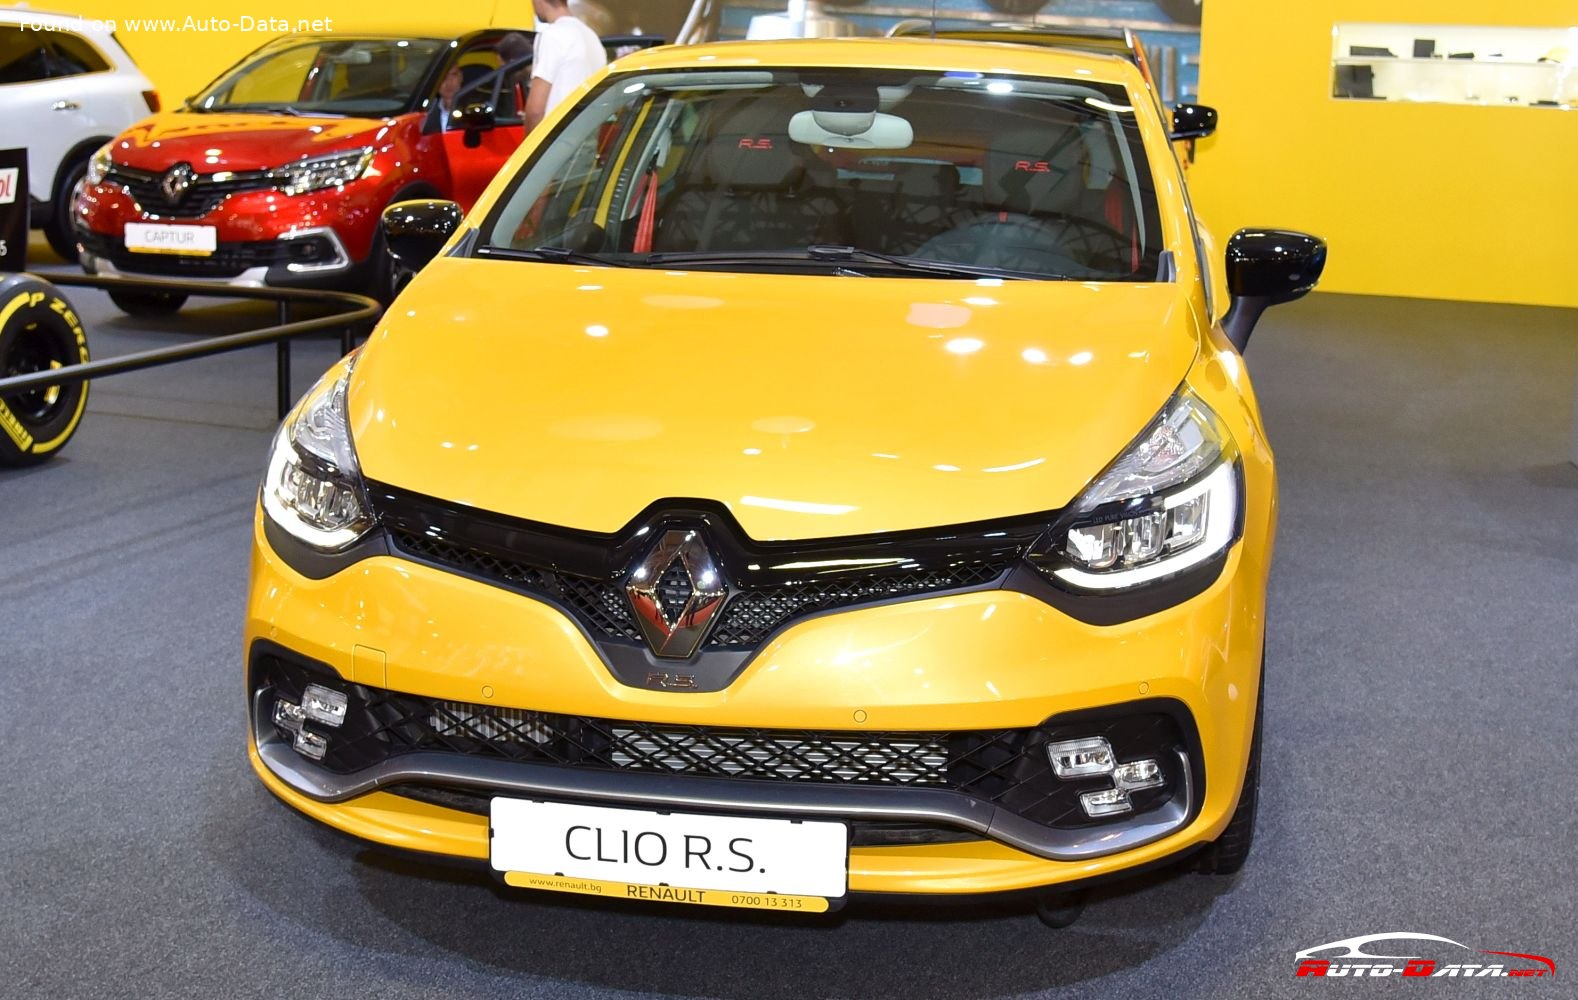 2016 Renault Clio Play 16v £6,650